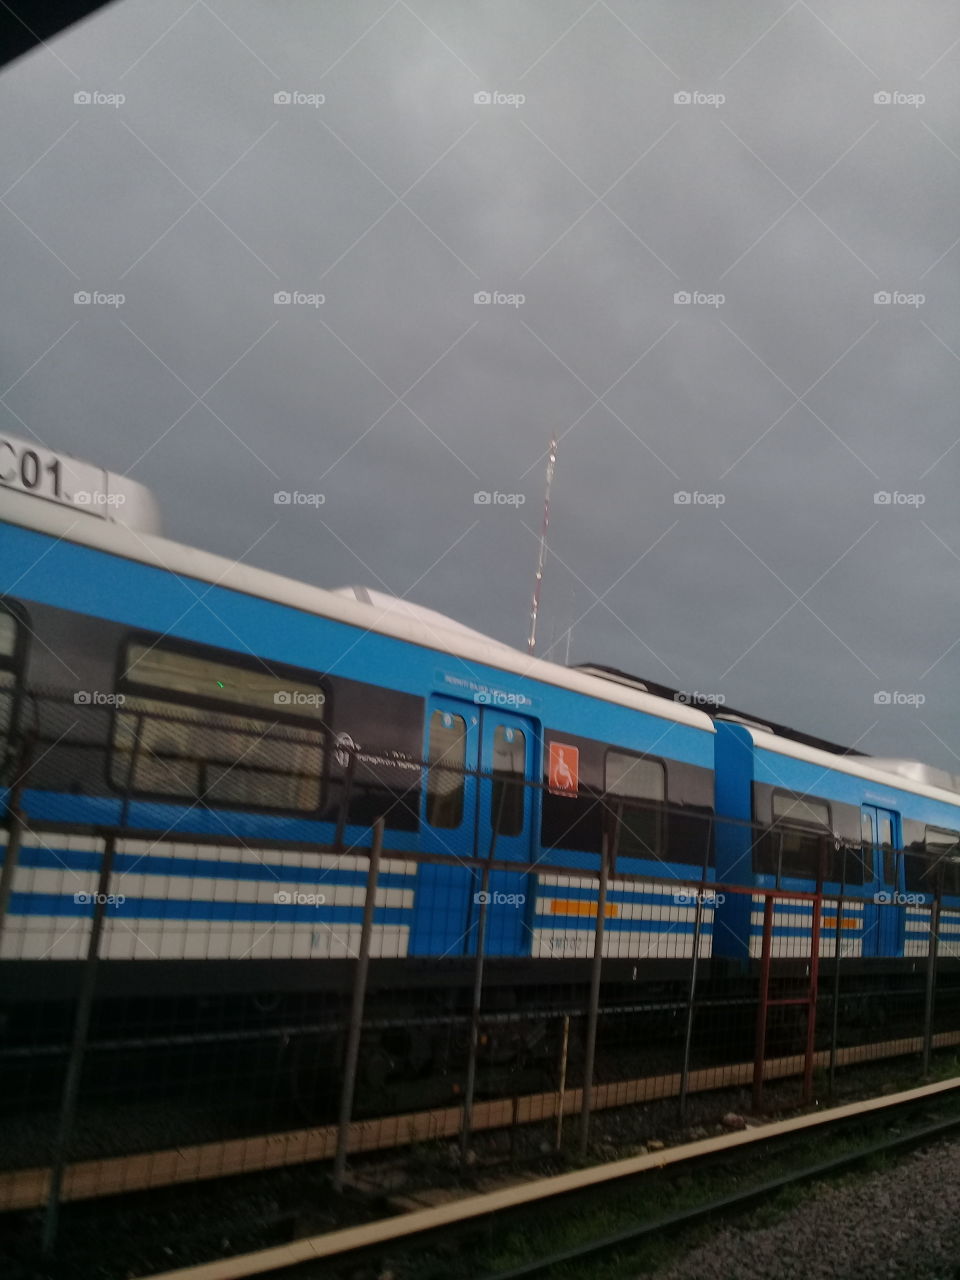 cielo tormentoso de verano sobre una ciudad. Fotografía tomada desde la plataforma de la estación de tren de Moreno,provincia de Buenos Aires. Argentina